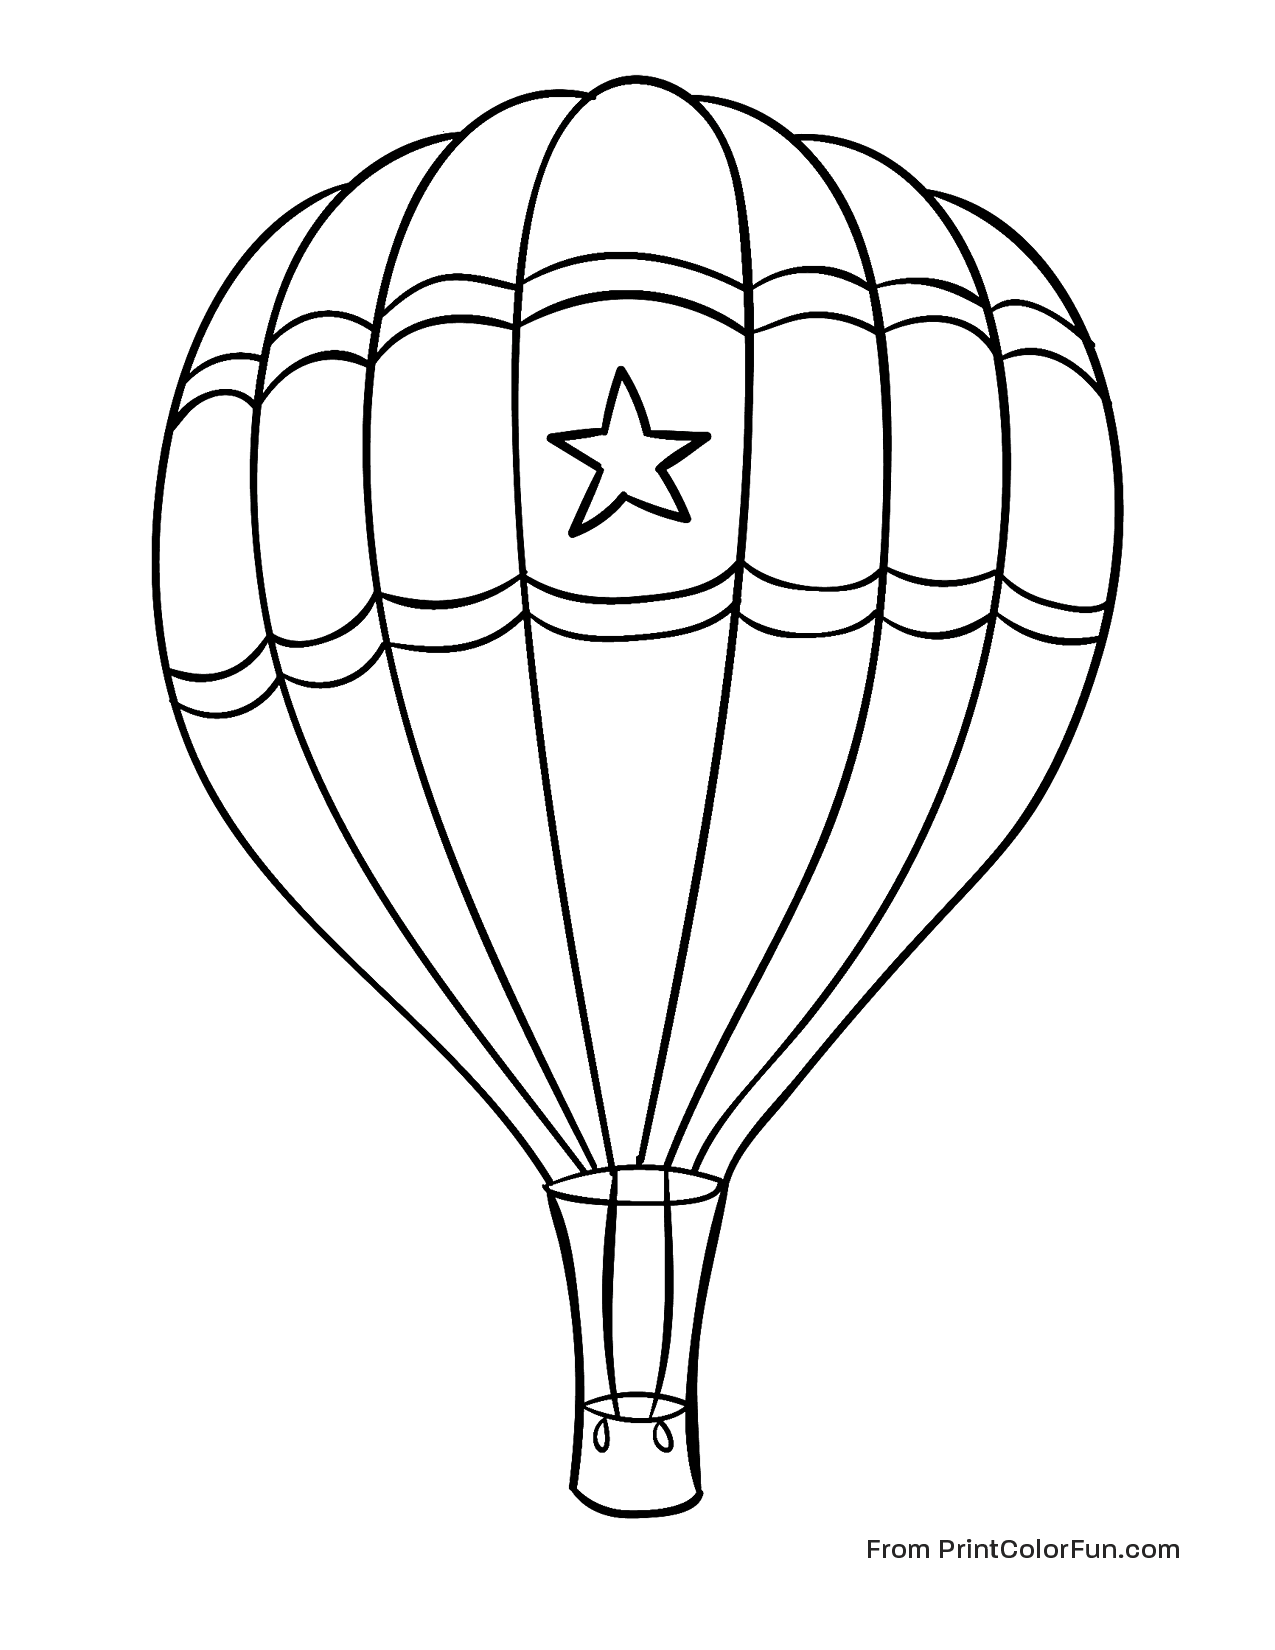 Hot Air Balloon With A Star Print Color Fun